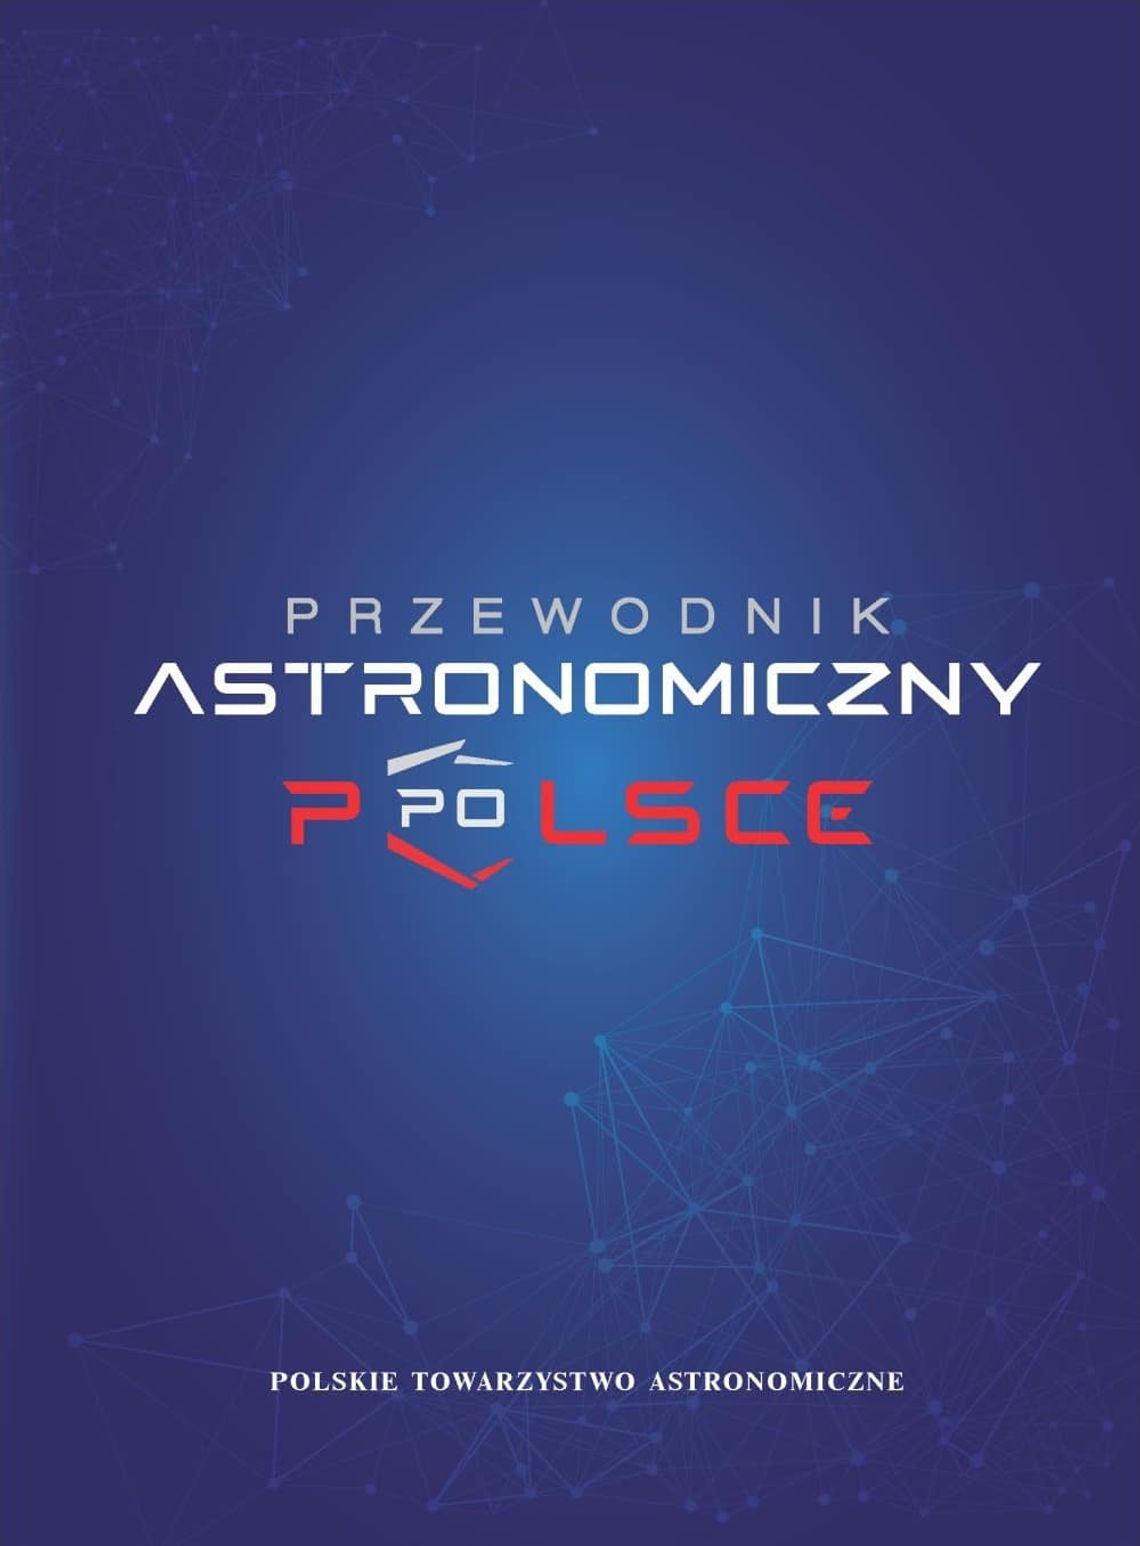 Obserwatorium Astronomiczne w Radomyślu Wielkim zostało umieszczone w „Przewodniku astronomicznym po Polsce”.